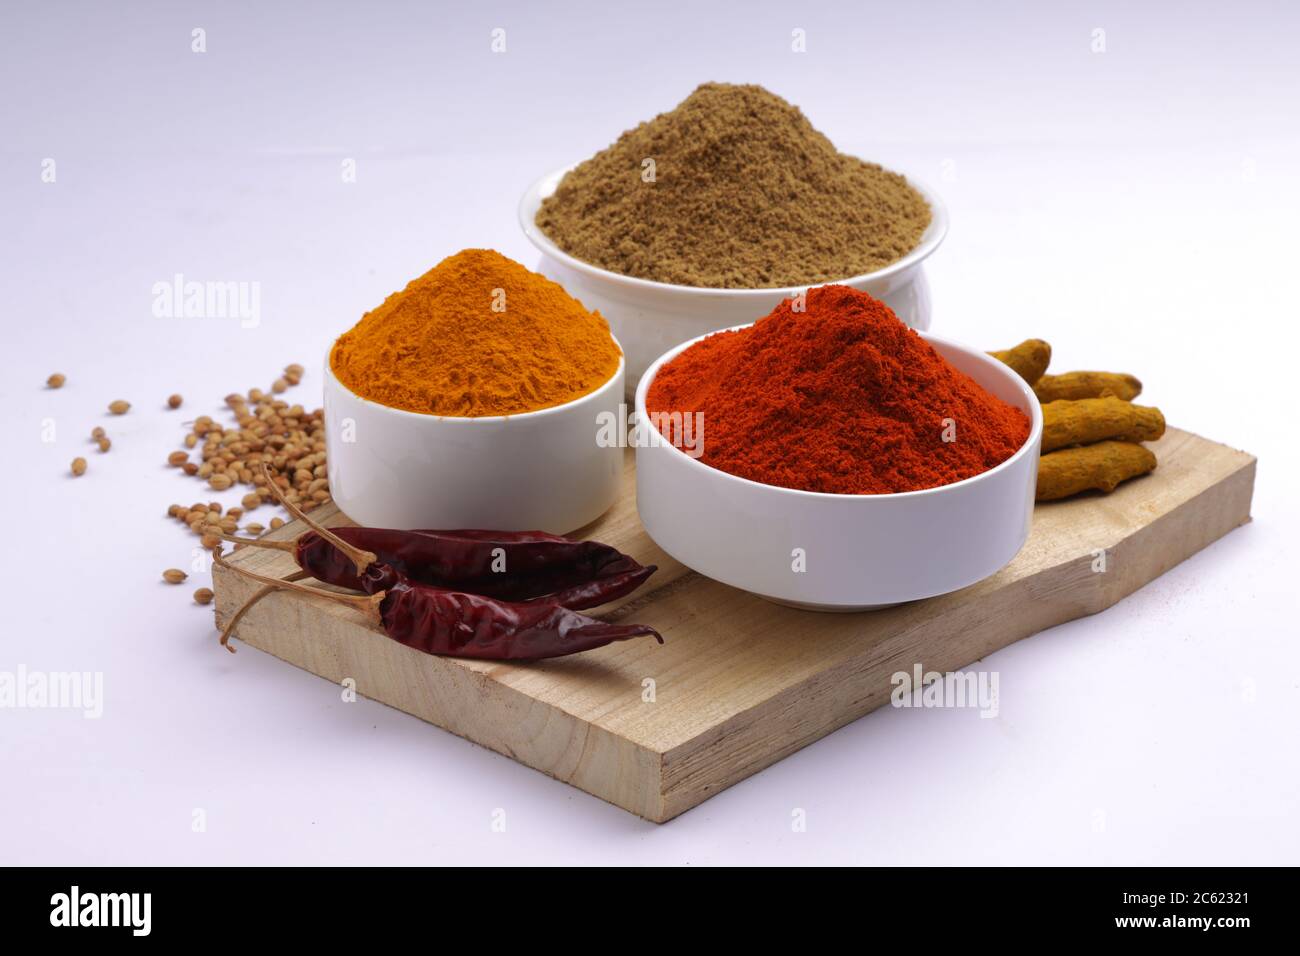 Épices indiennes Chili, Turmeric et Coriander sont les trois épices de base utilisées pour le curry indien ou les plats, disposés dans un bol blanc Banque D'Images